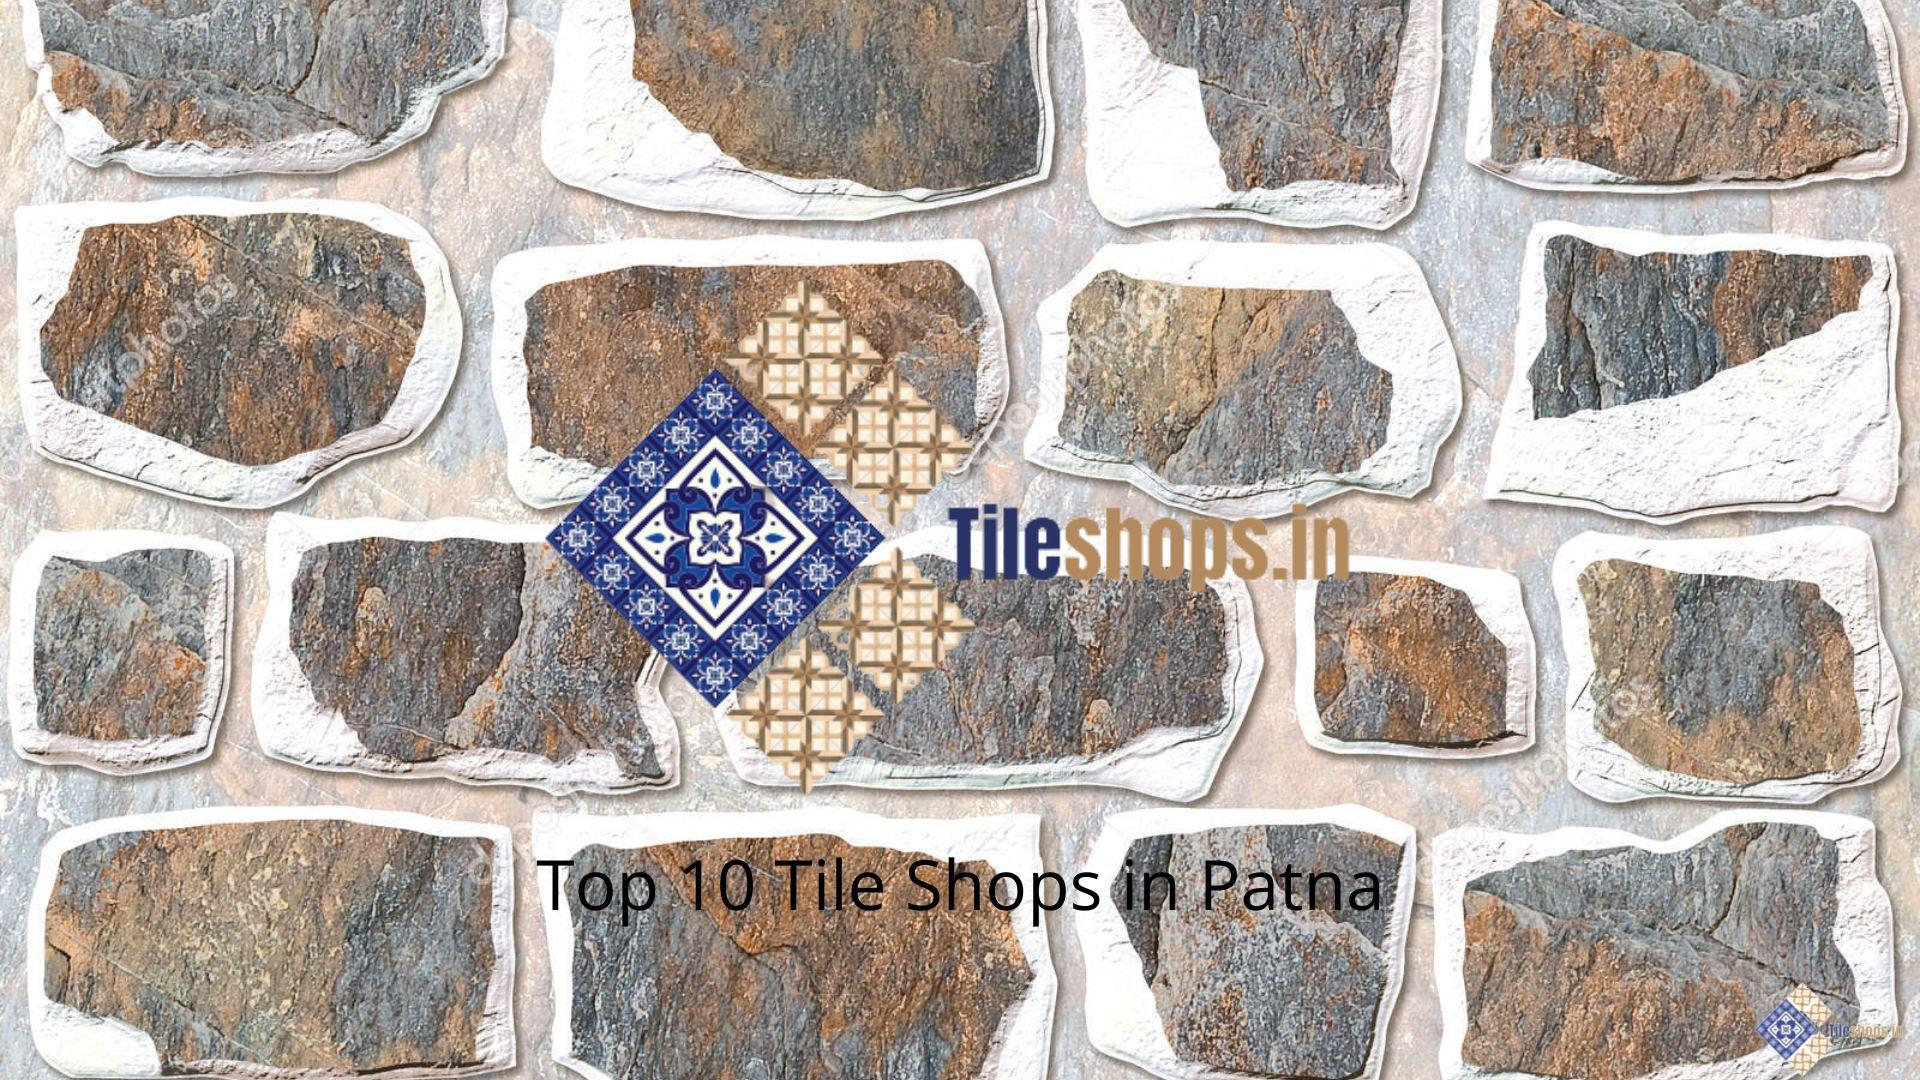 Top 10 Tile Shops in Patna